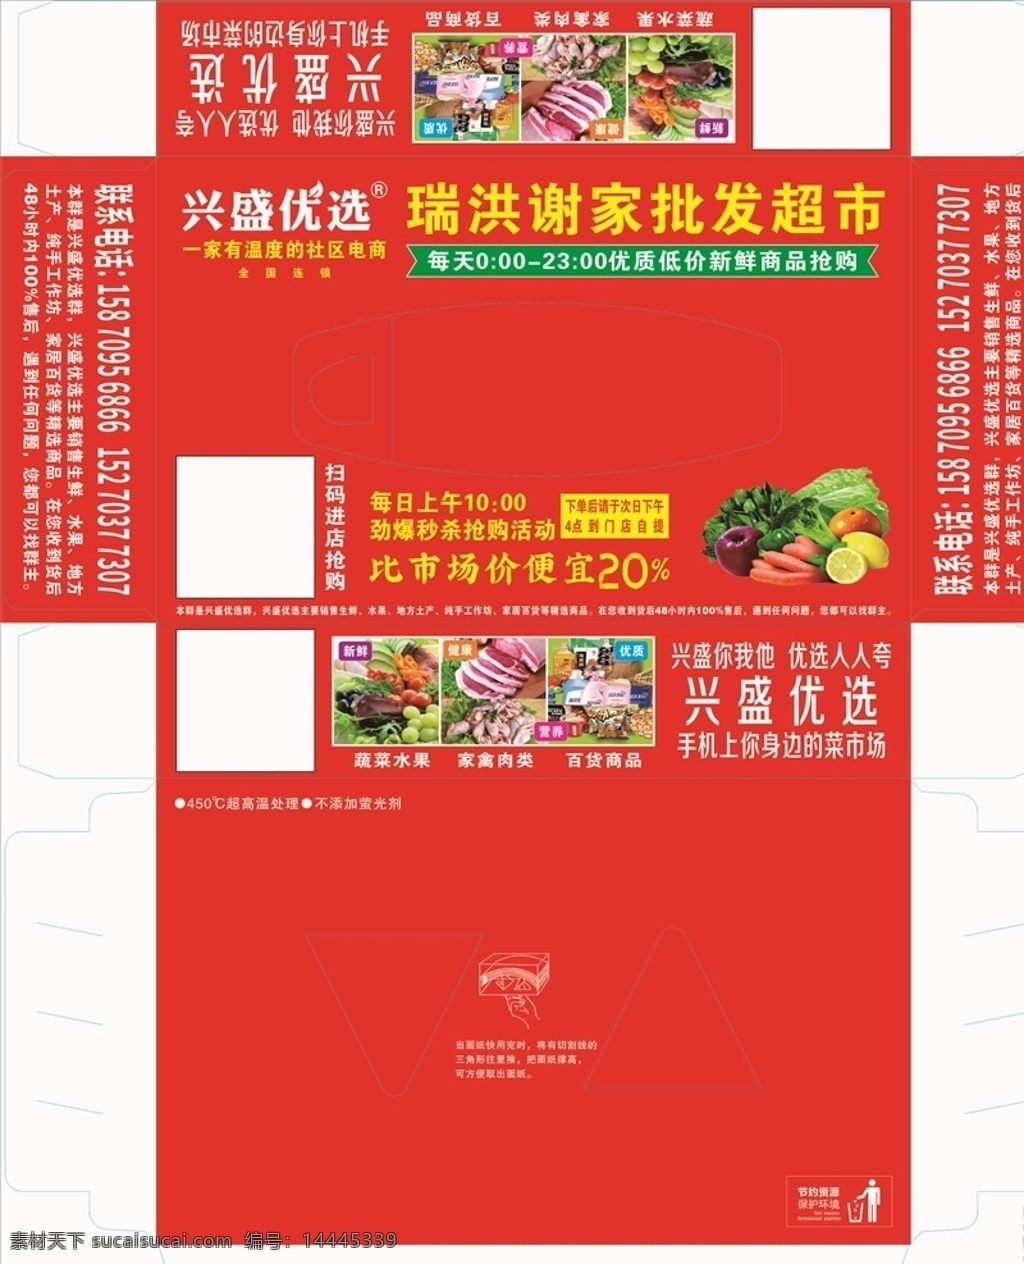 超市 蔬菜 红色 广告 兴盛 优选 兴盛优选 纸盒包装 简约 大气 包装设计 混合